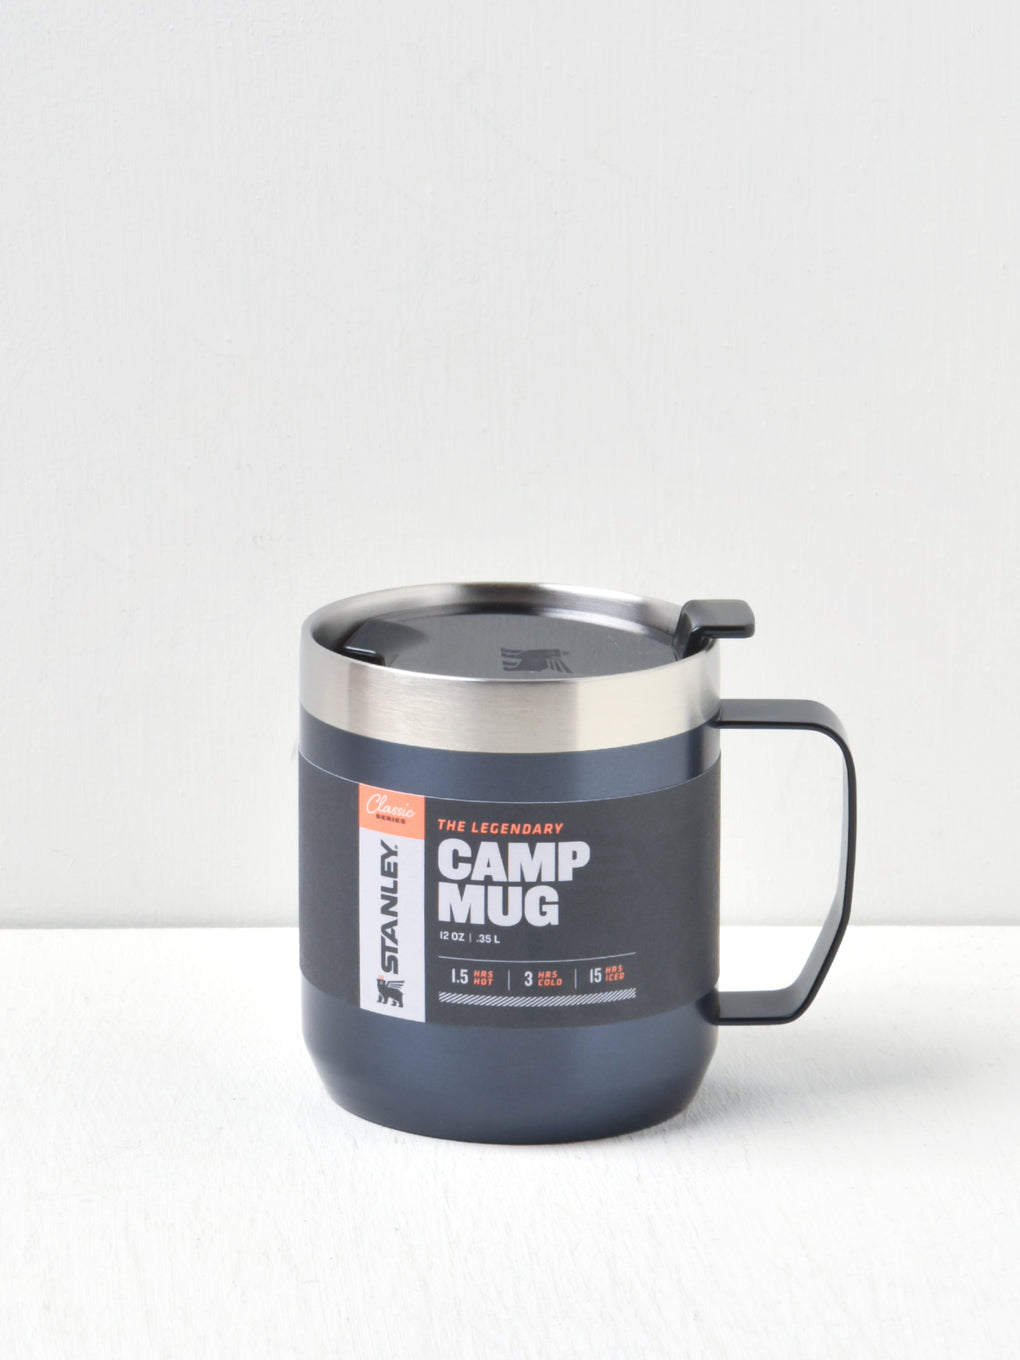 Classic Legendary Camp Mug